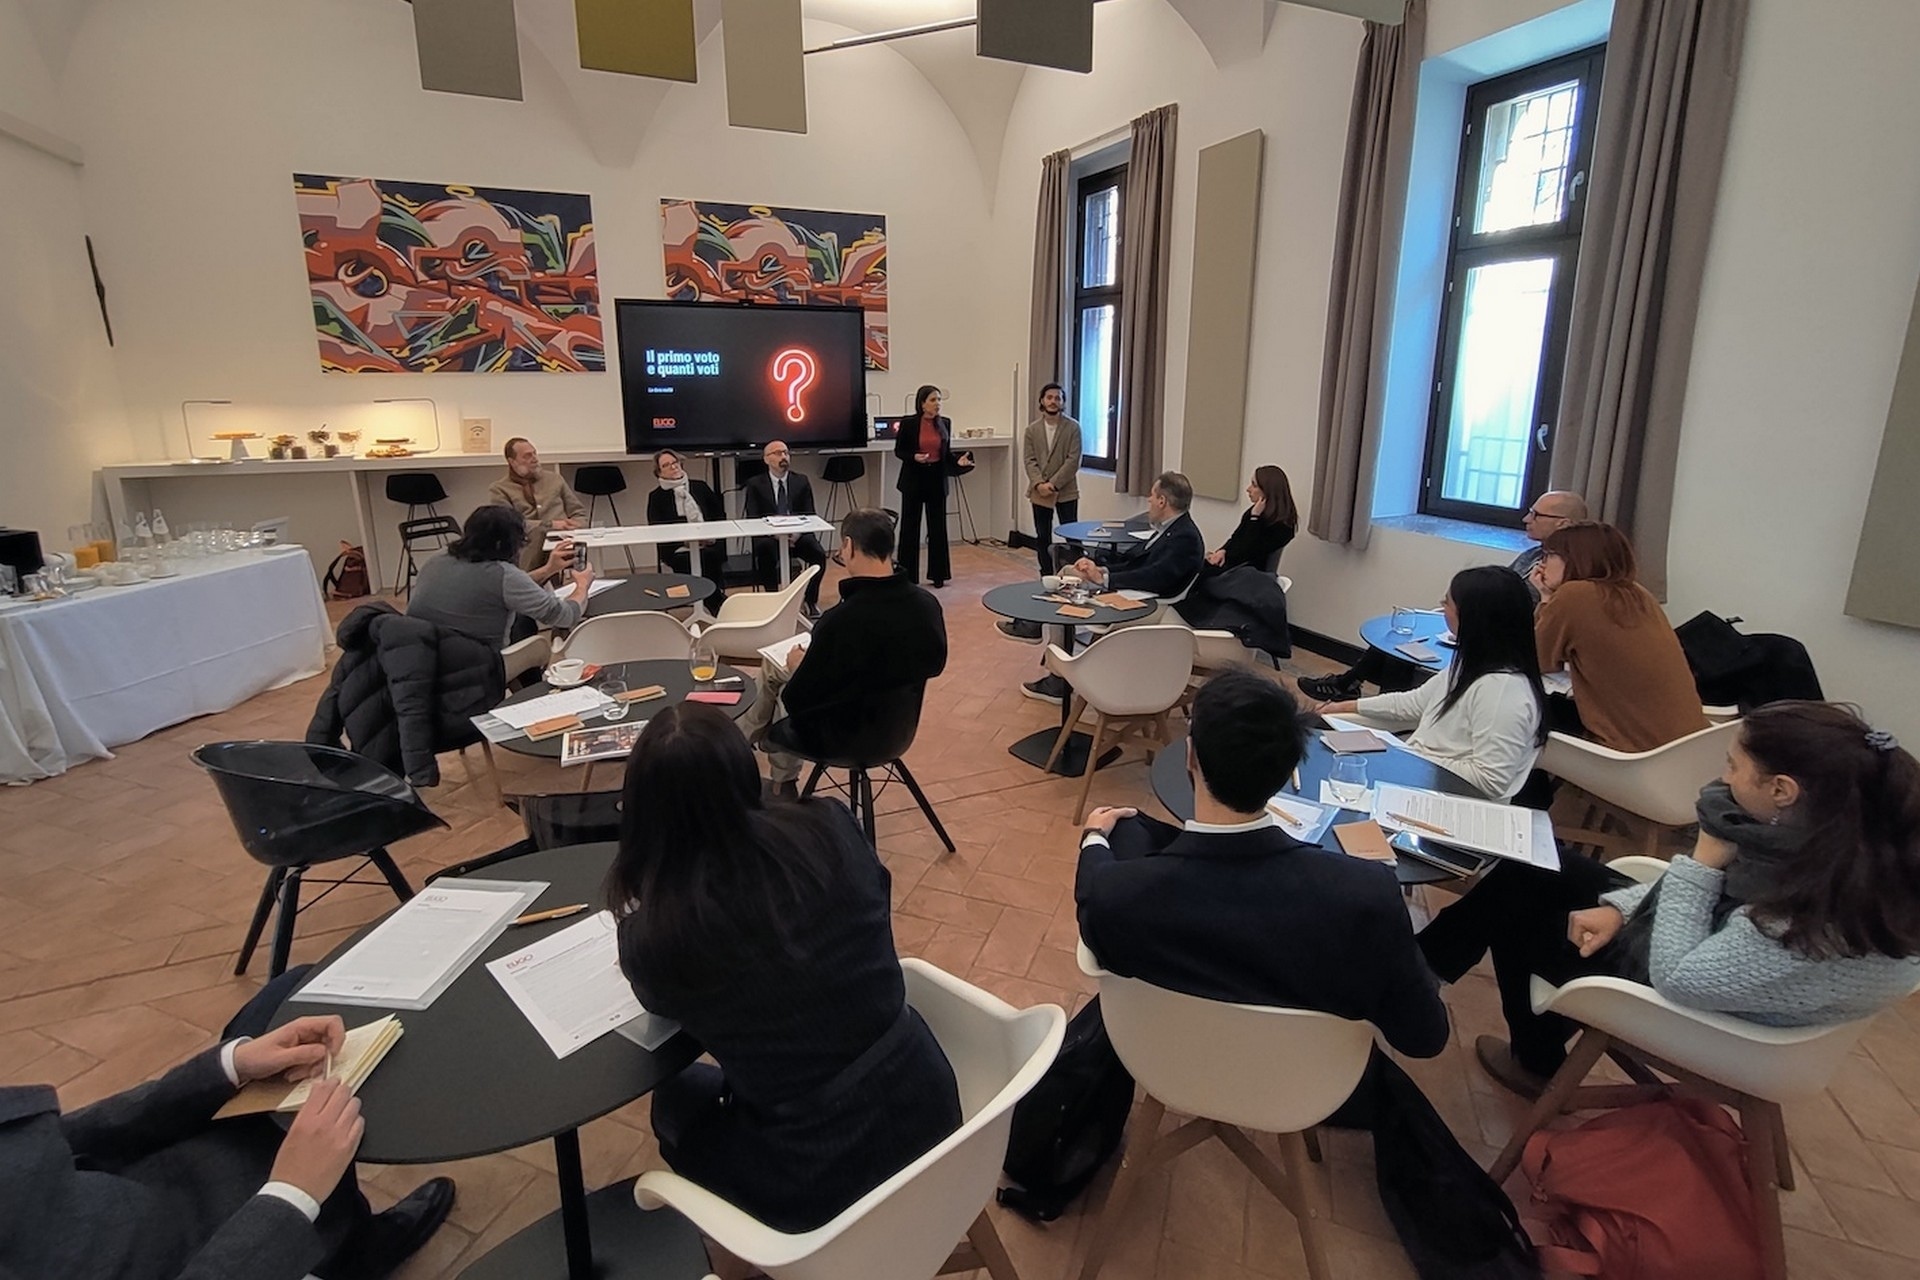 Eligo Next: predstavljanje nove Eligo Next elektroničke i online platforme za glasovanje u Milanu od strane Irene Pugliatti, izvršne direktorice tvrtke